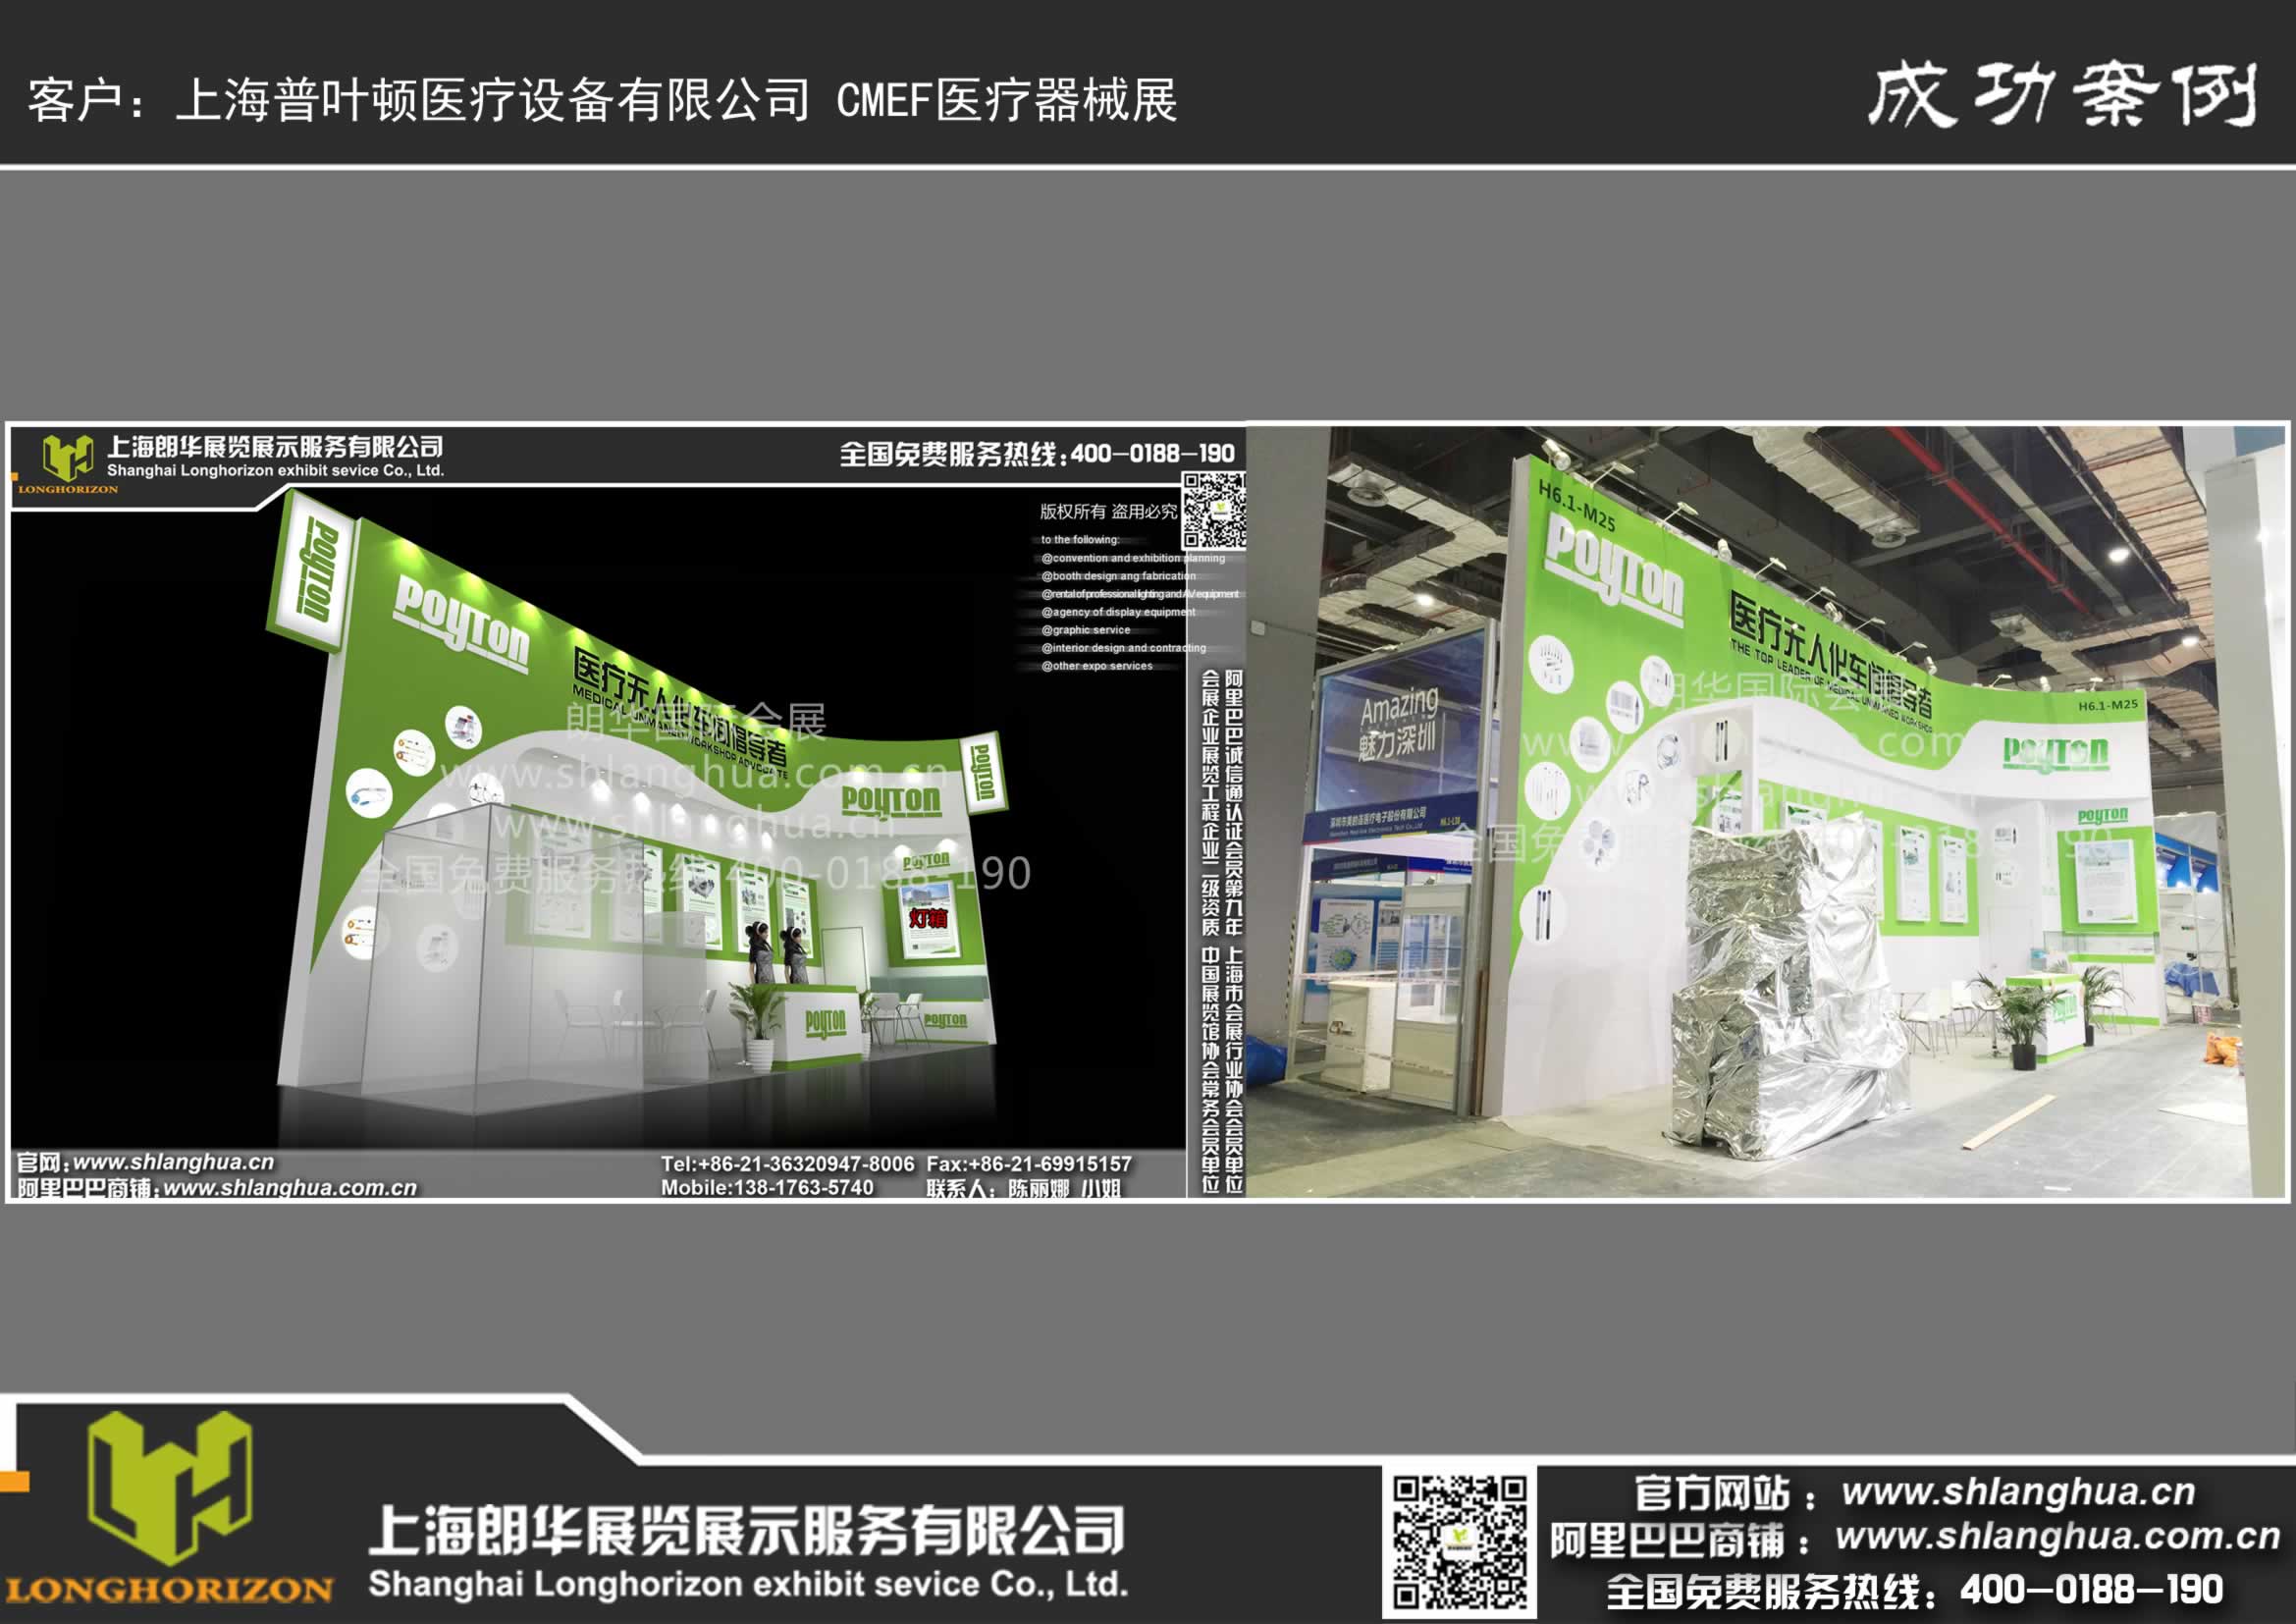 上海普叶顿医疗设备有限公司 CMEF医疗器械展